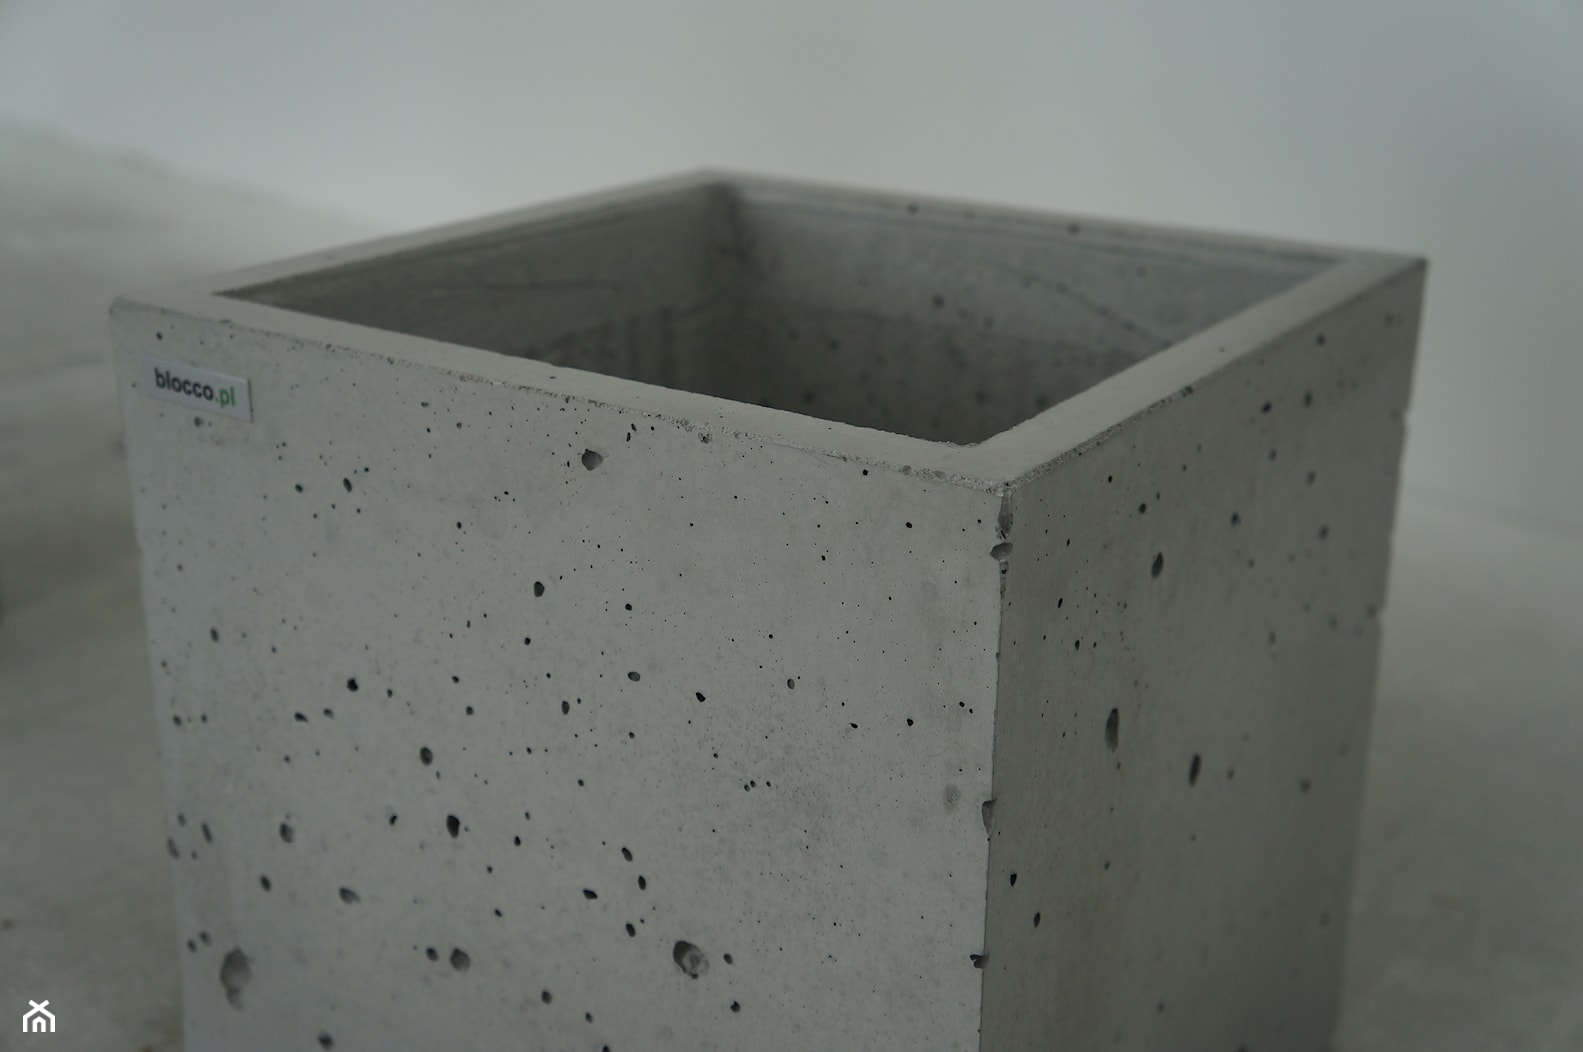 Donica betonowa Cubo 30 - zdjęcie od blocco.pl - Homebook